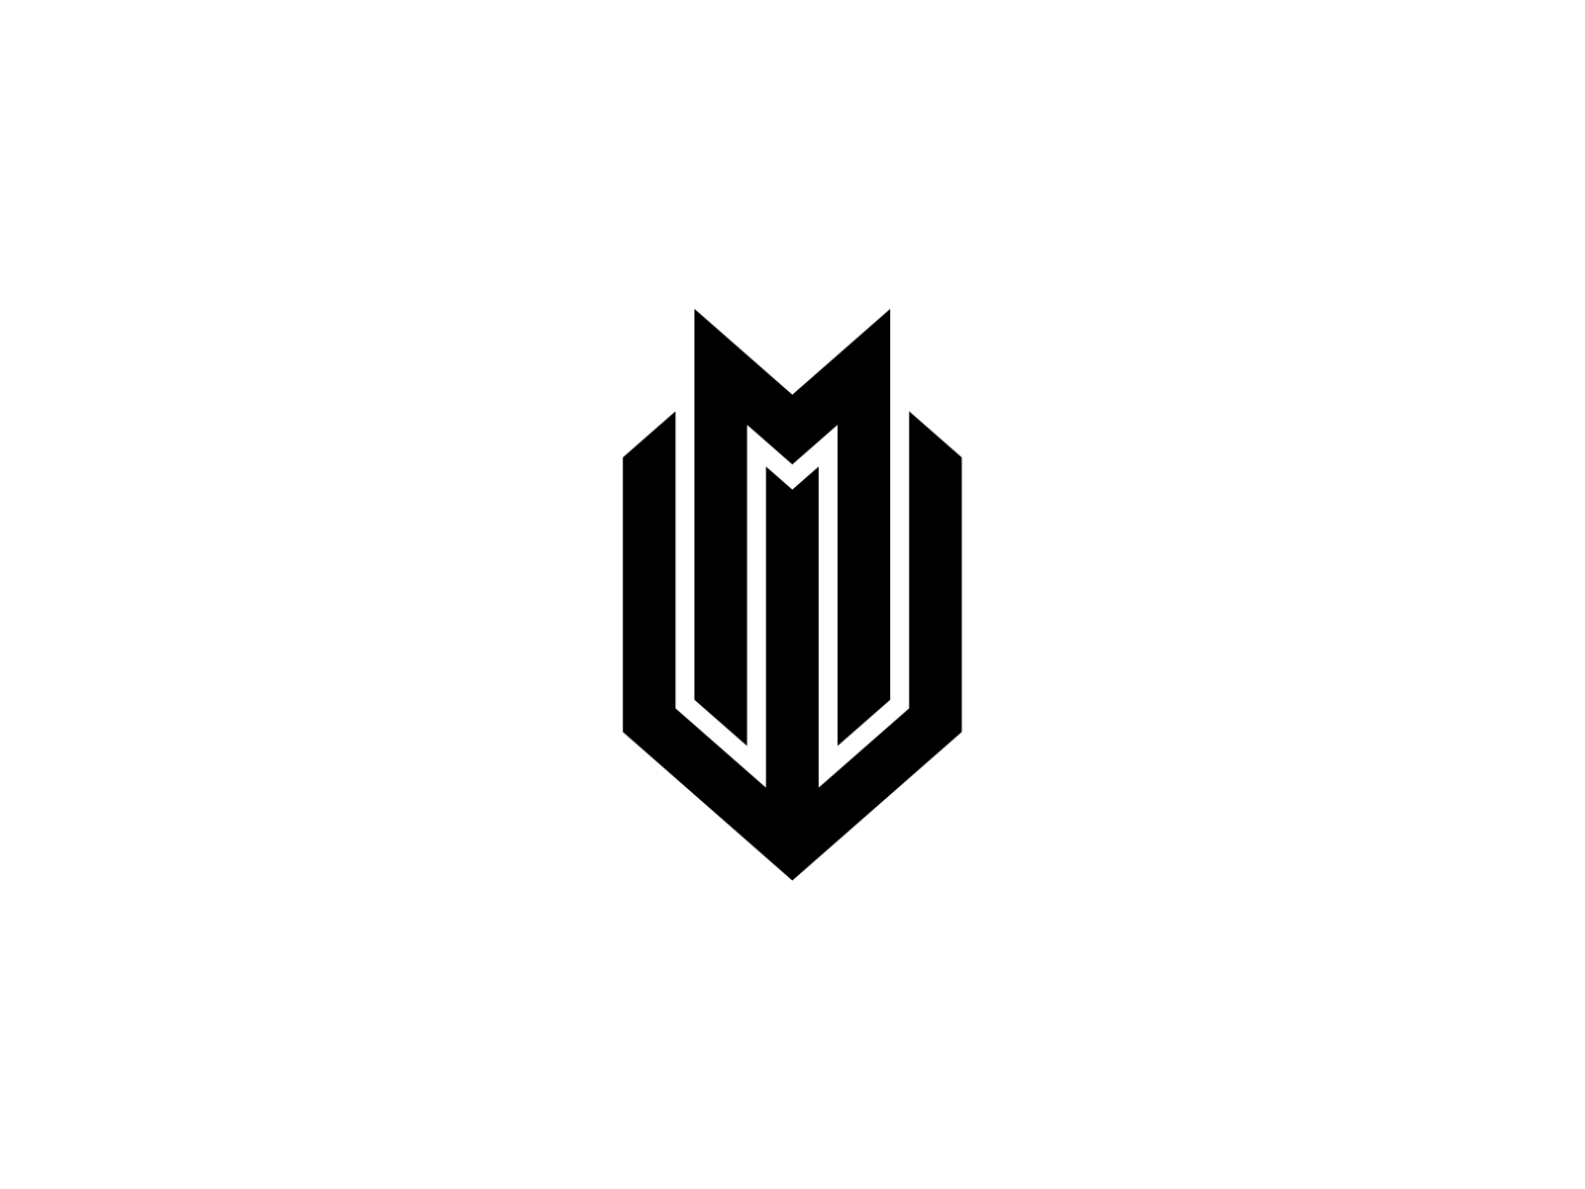 WM logo super cool combination by art_pensilKuli on Dribbble